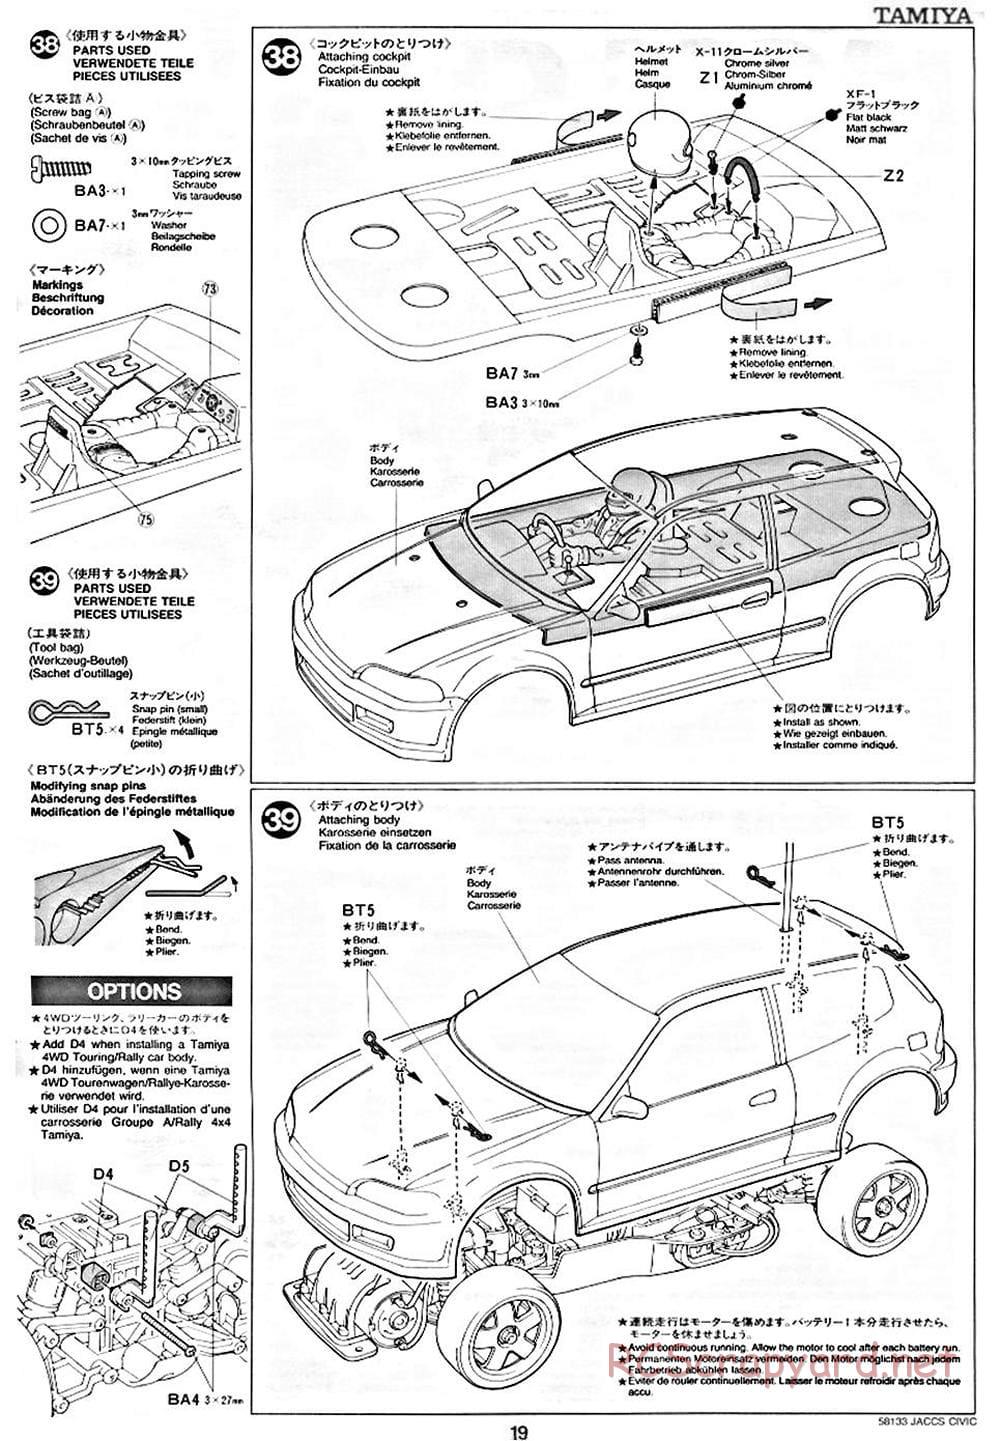 Tamiya - JACCS Honda Civic - FF-01 Chassis - Manual - Page 19